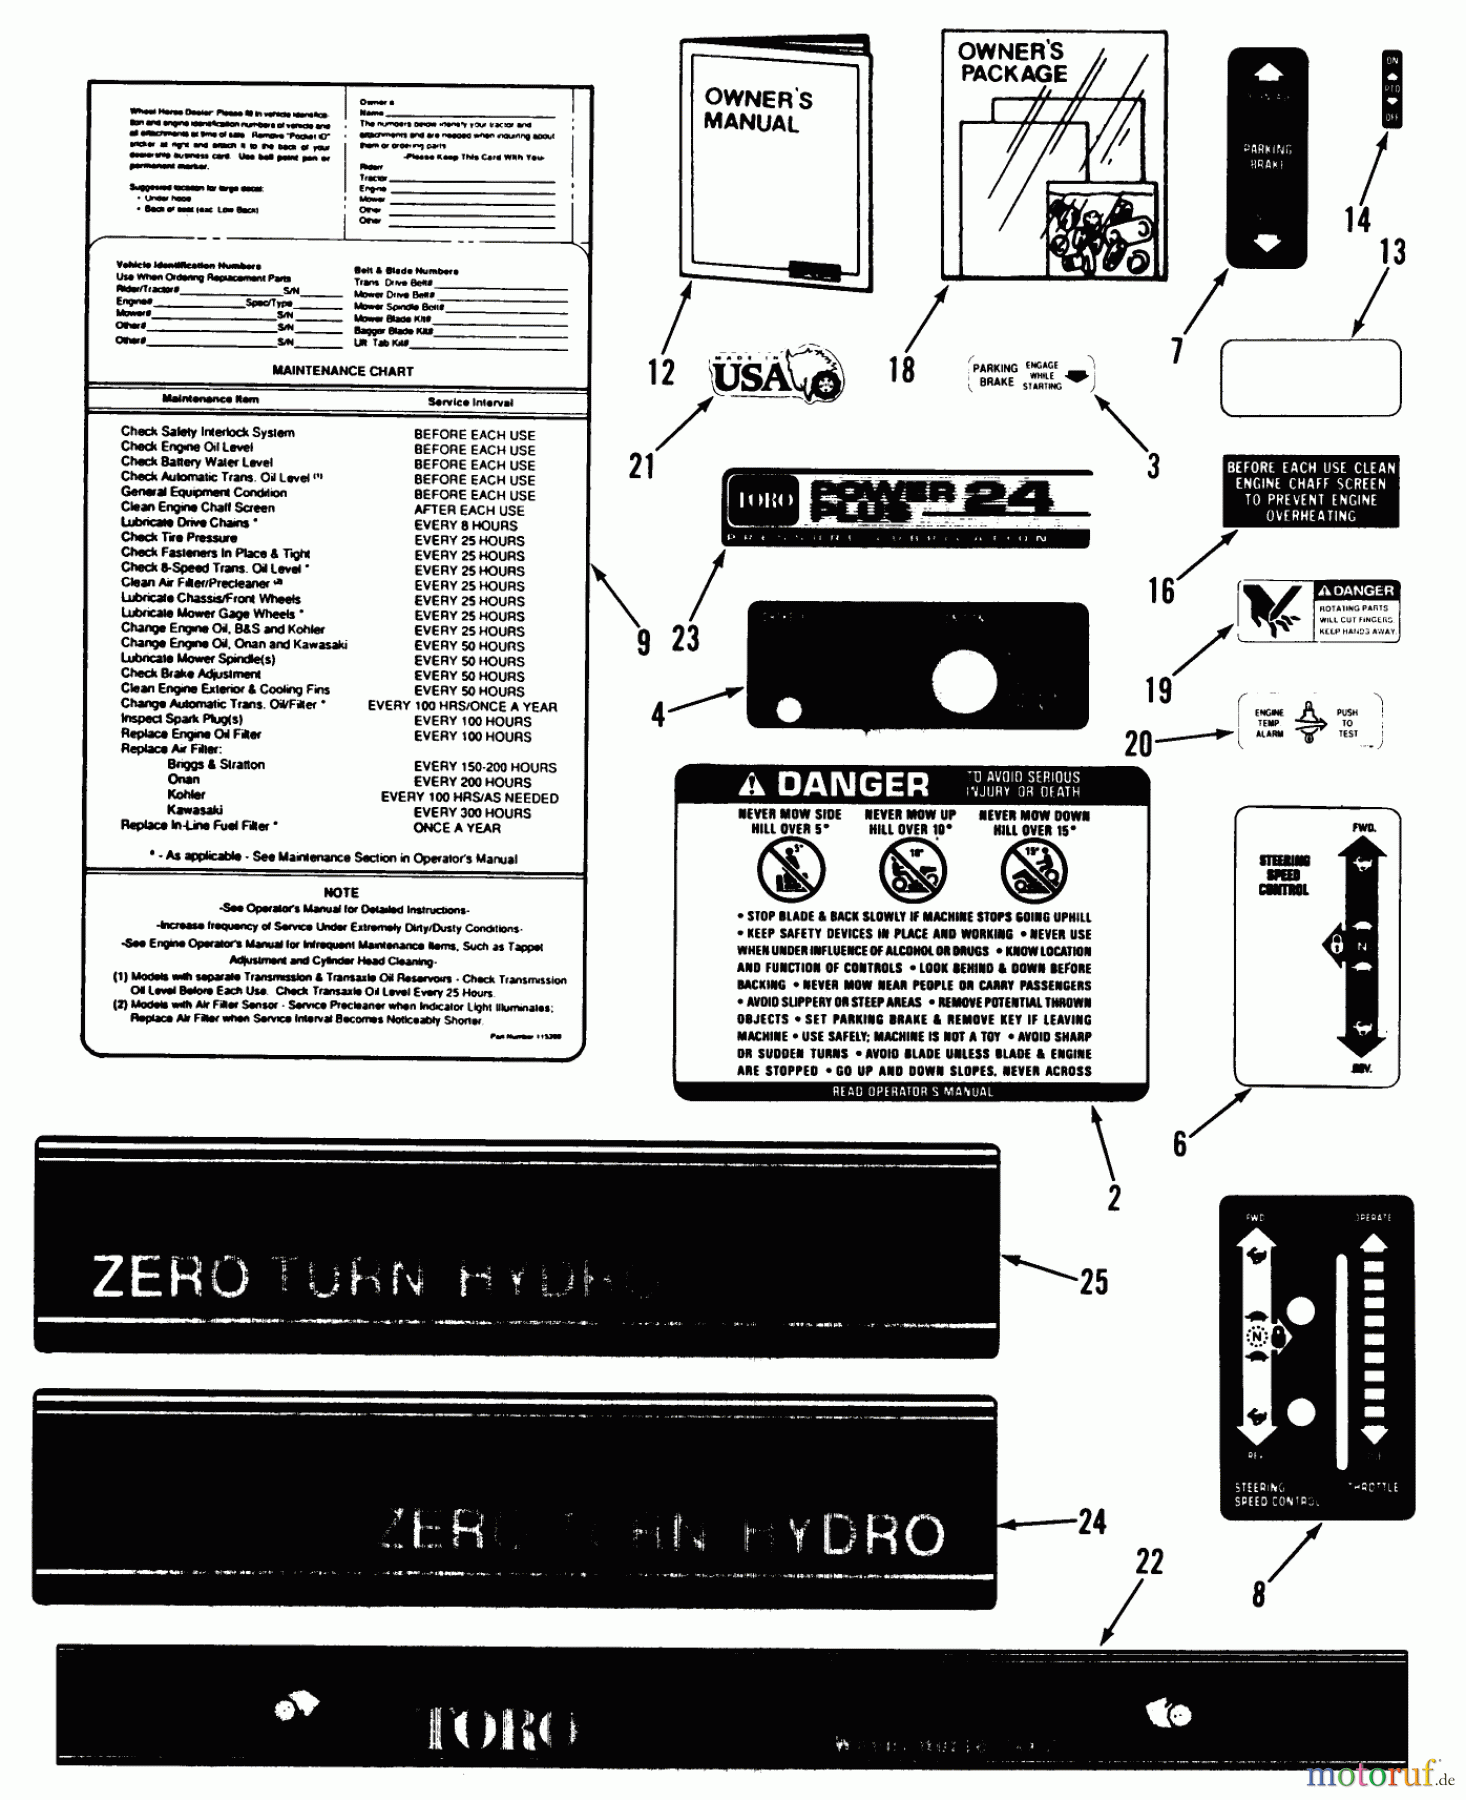  Toro Neu Mowers, Zero-Turn Z1-24OE03 (724-Z) - Toro 724-Z Tractor, 1990 DECALS